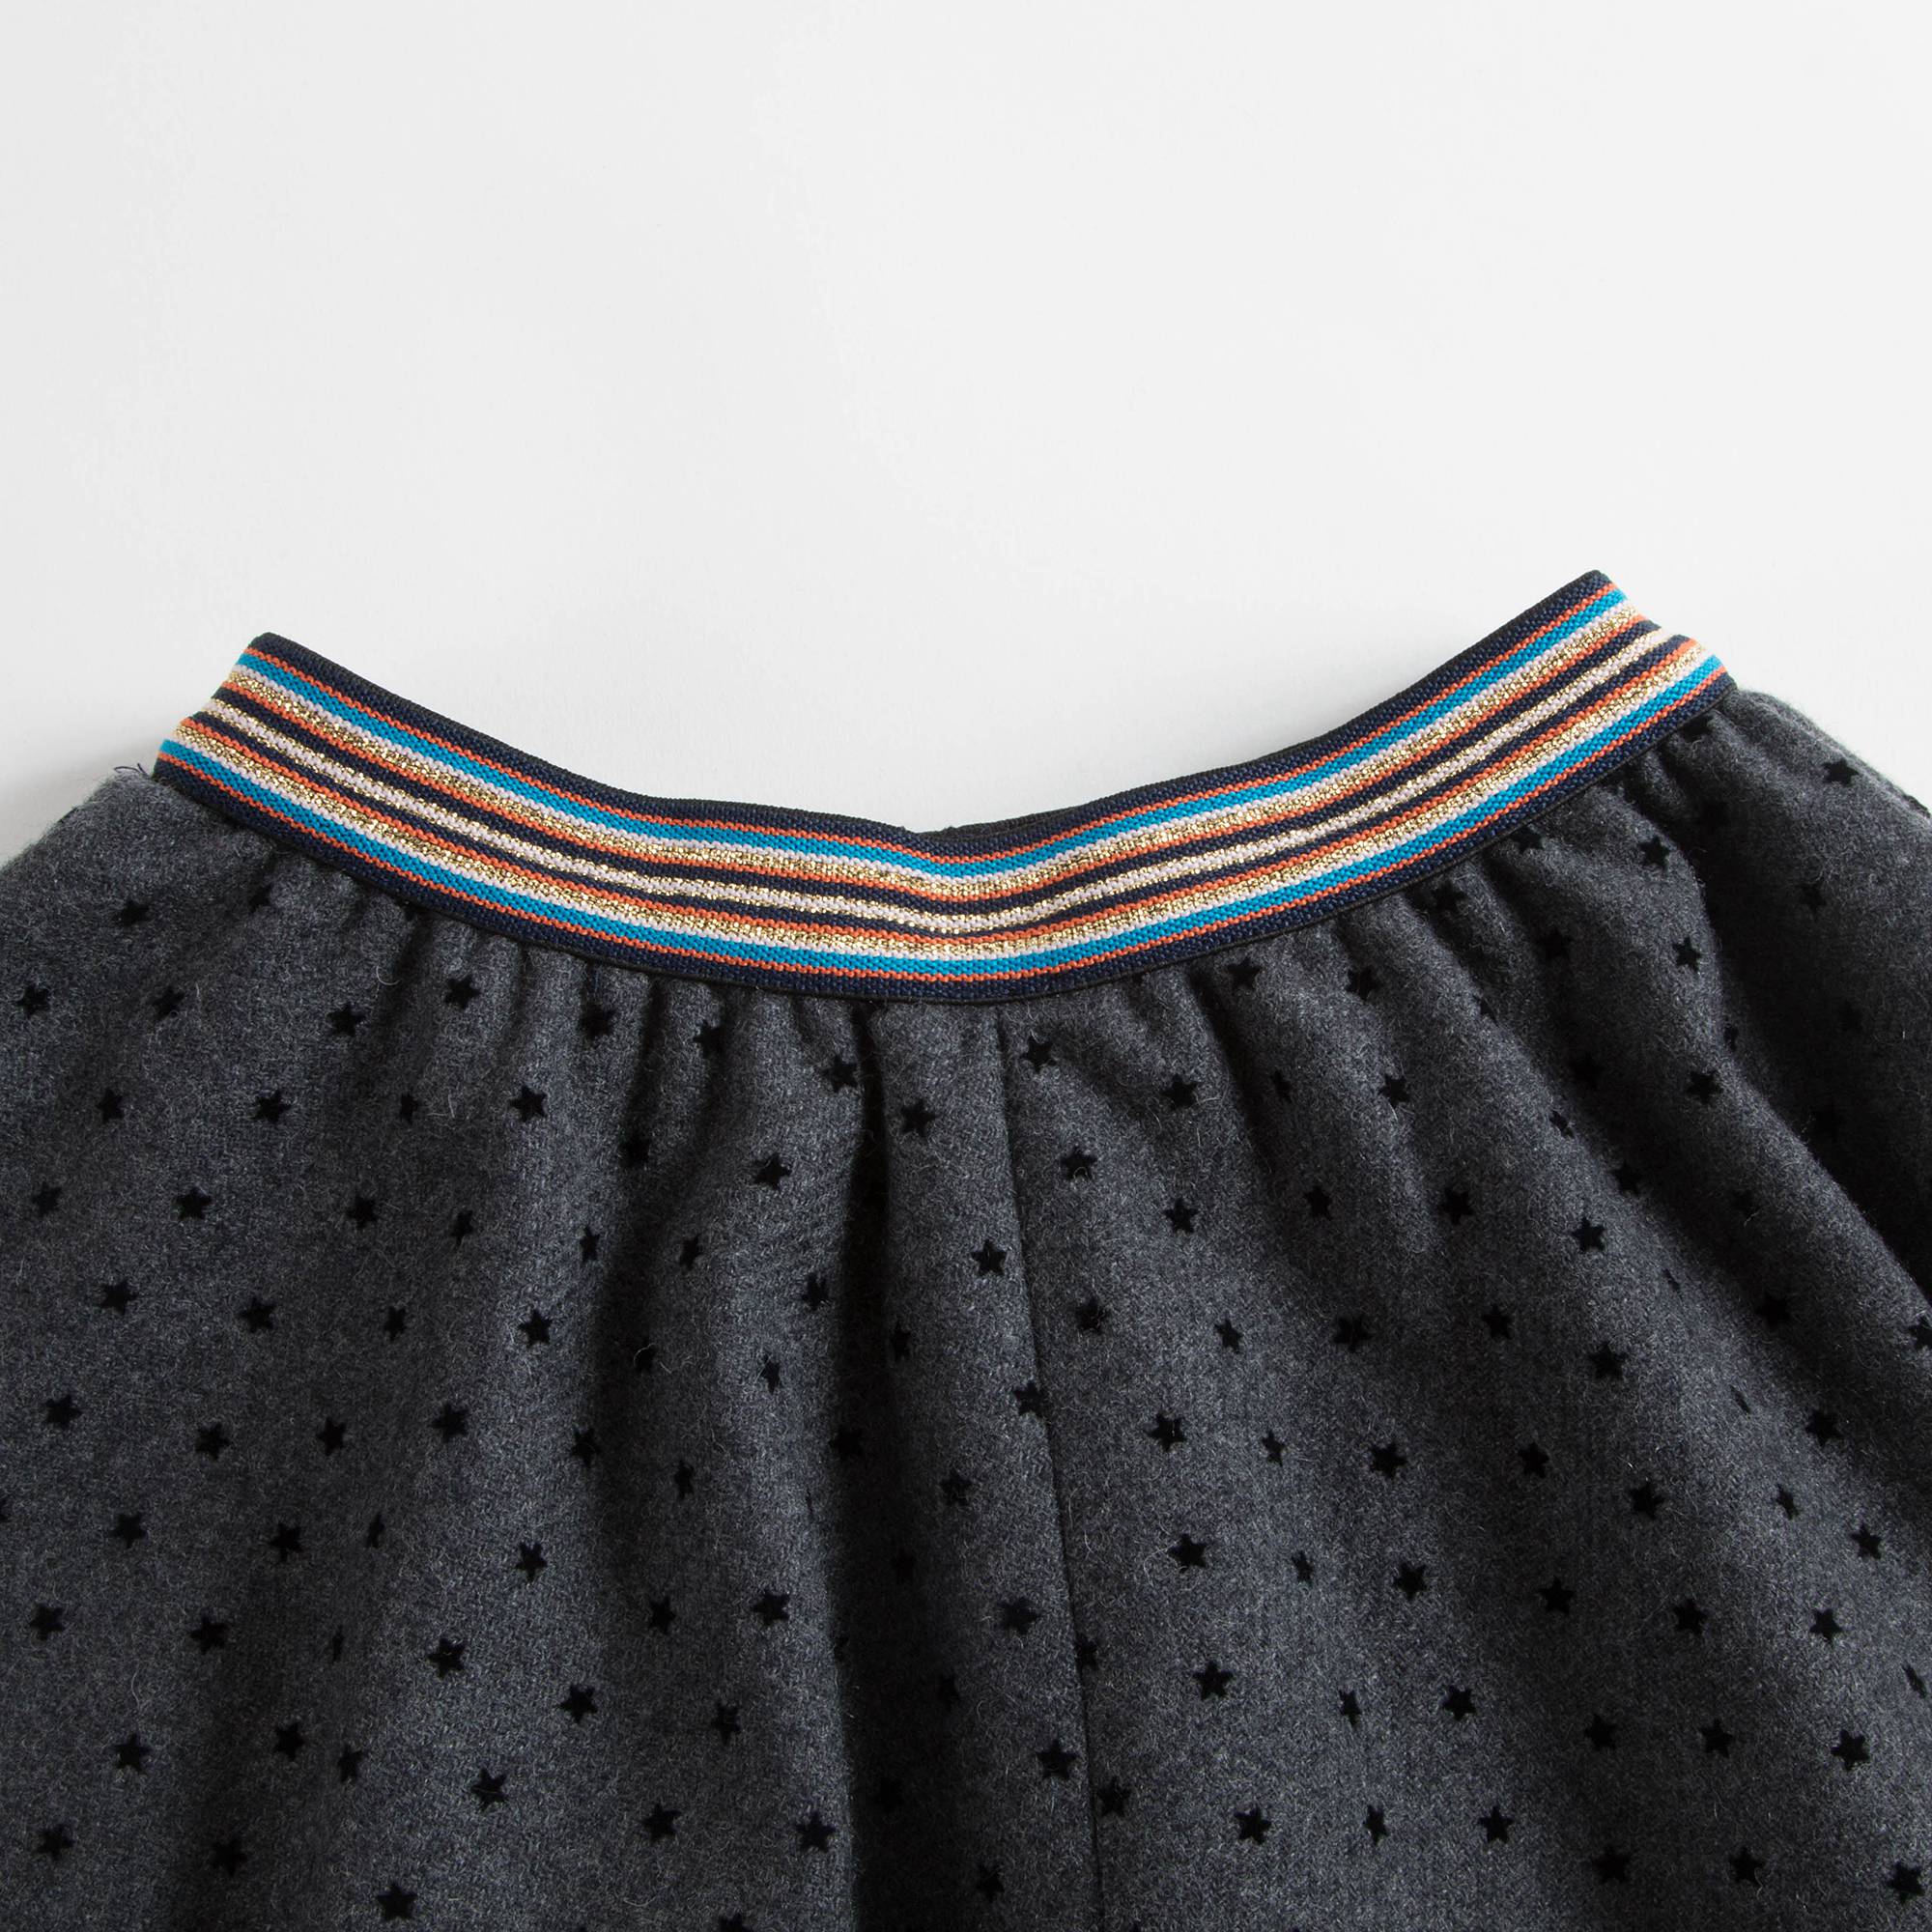 Girls Flannel Laine Skirt